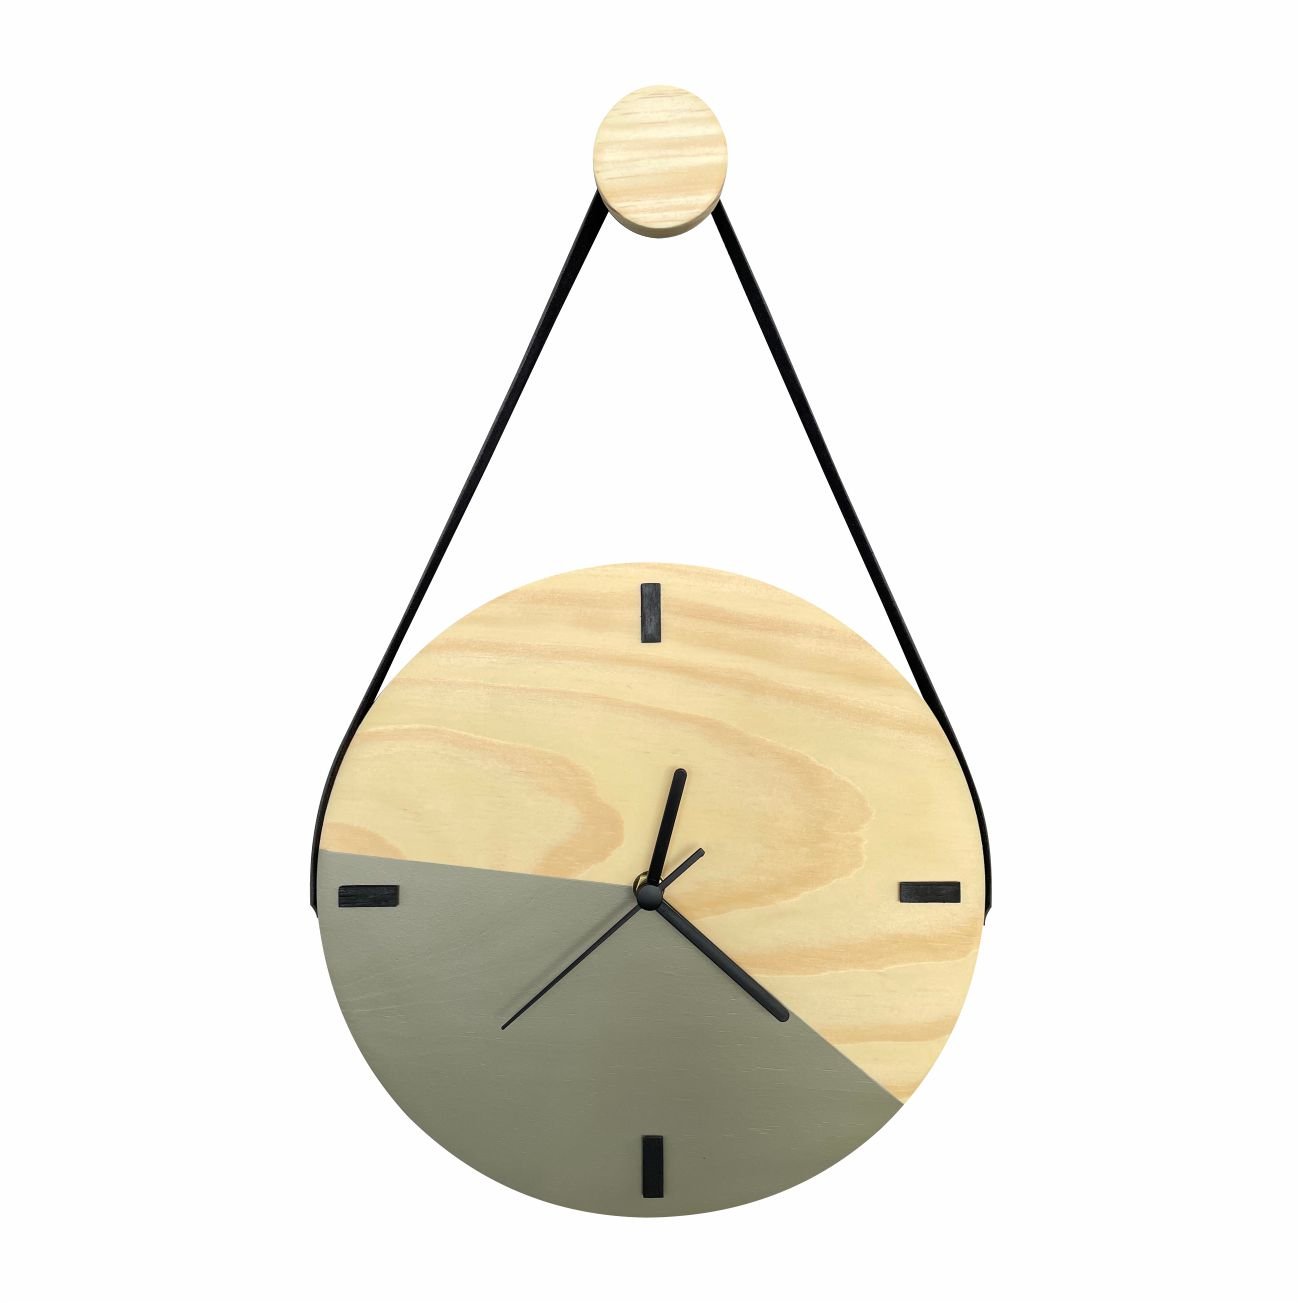 Relógio Decorativo Edward Clock Escandinavo Cinza Concreto com Alça - 1